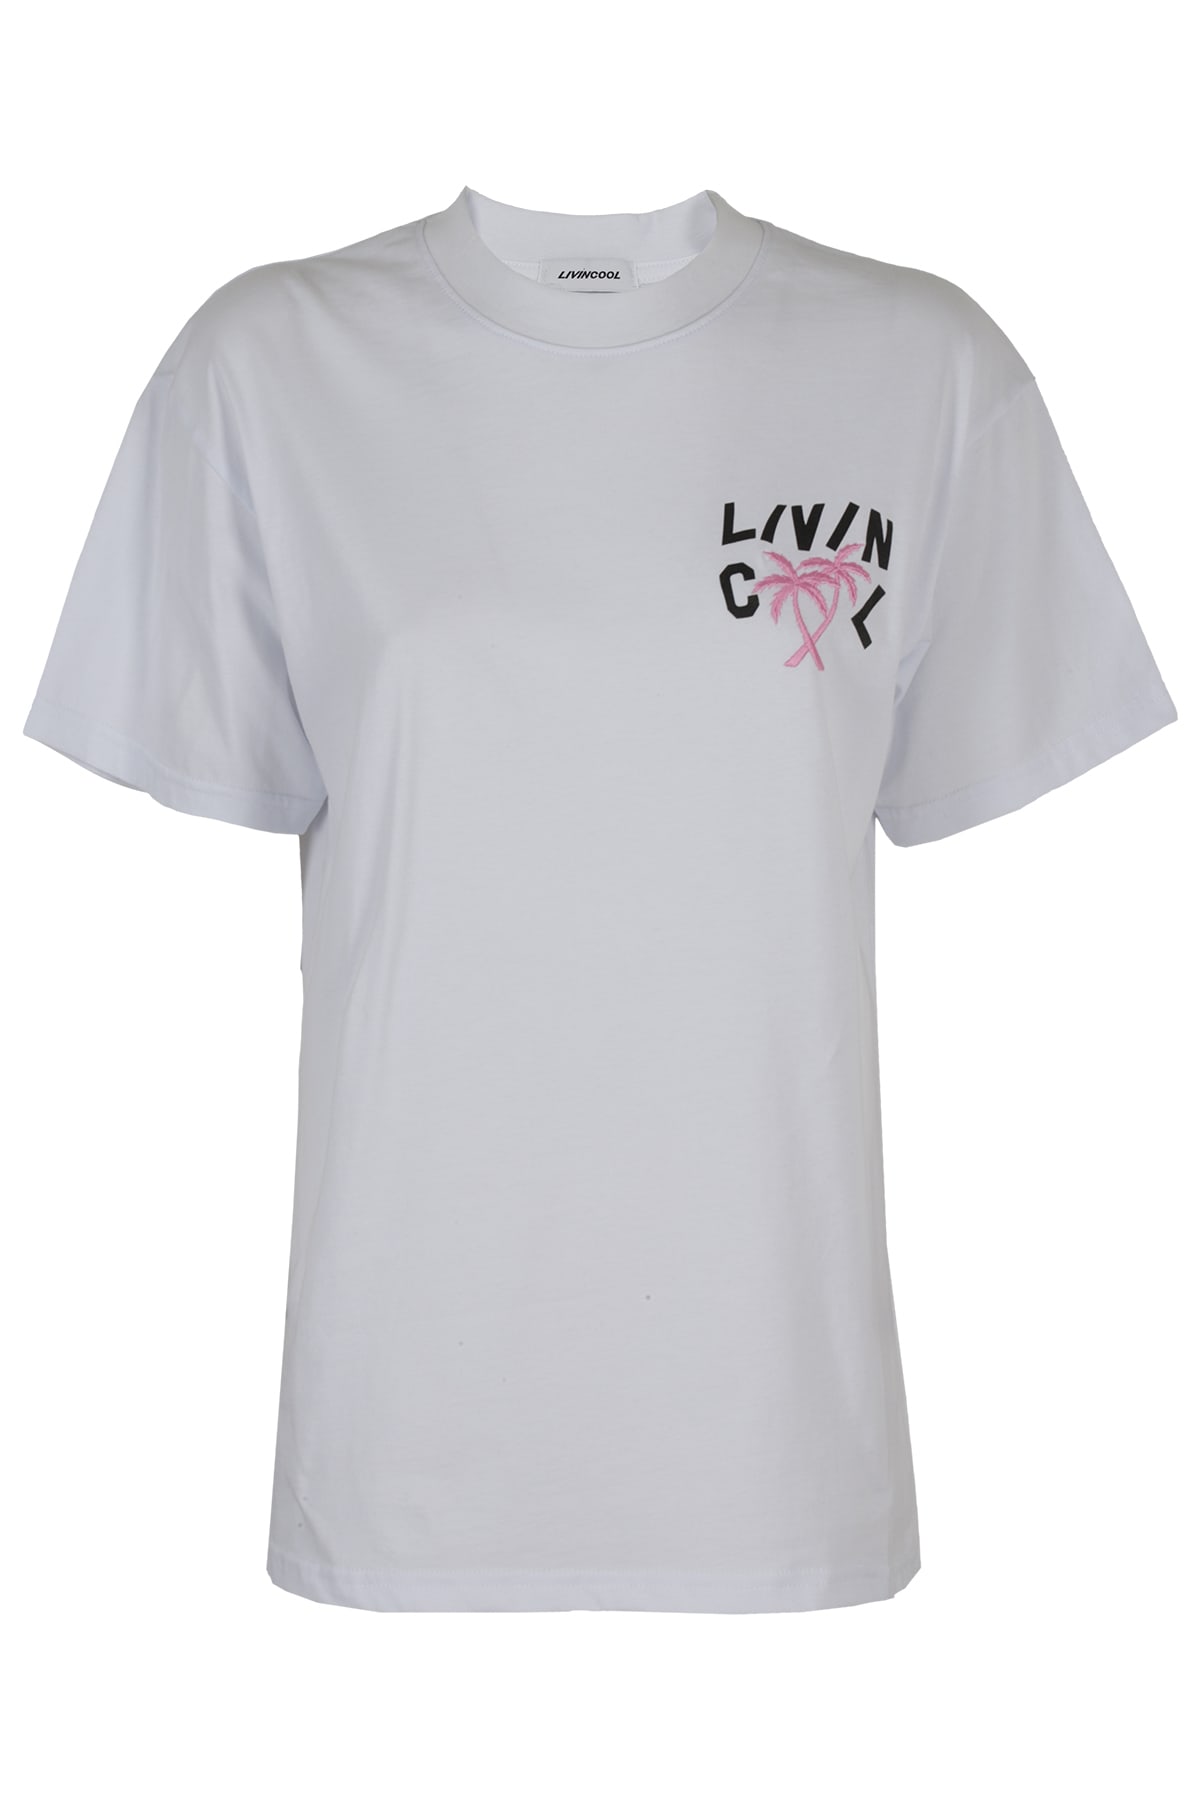 LIVINCOOL T-Shirt